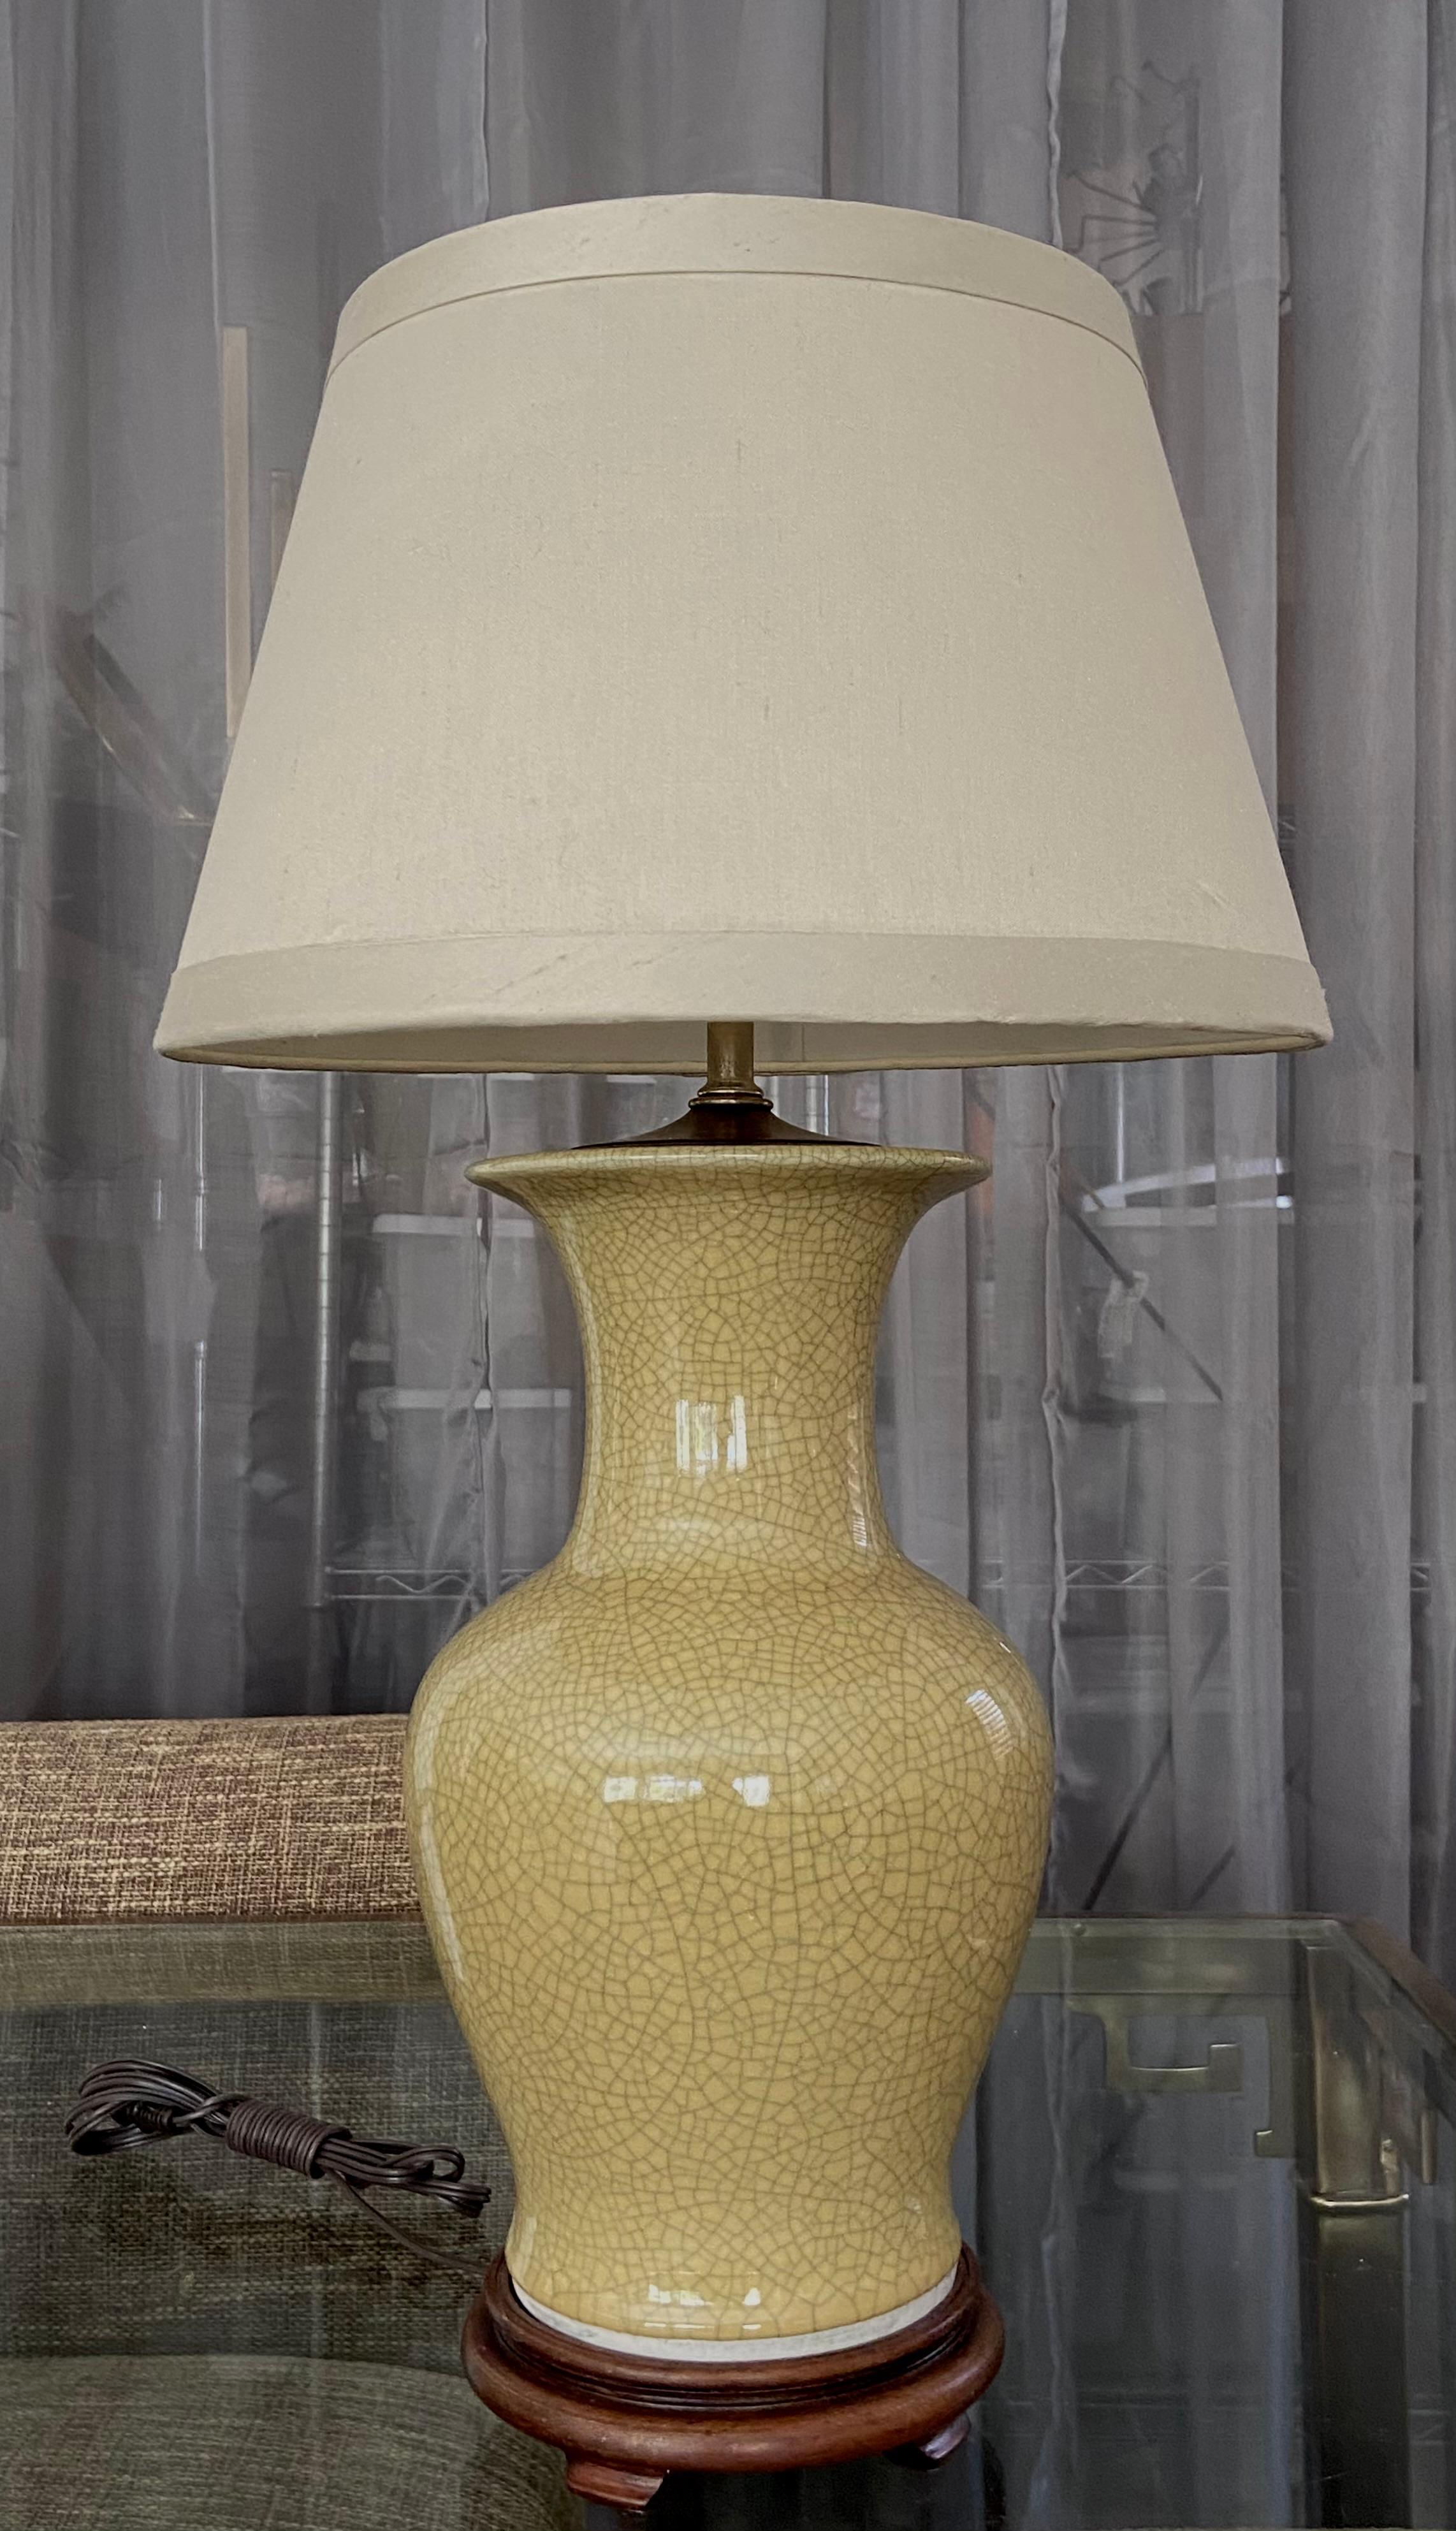 Single Japanese okra yellow crackle finish porcelain vase mounted on Asian style wood turned lamp base. New 3 way socket and wiring. Vase portion is 14